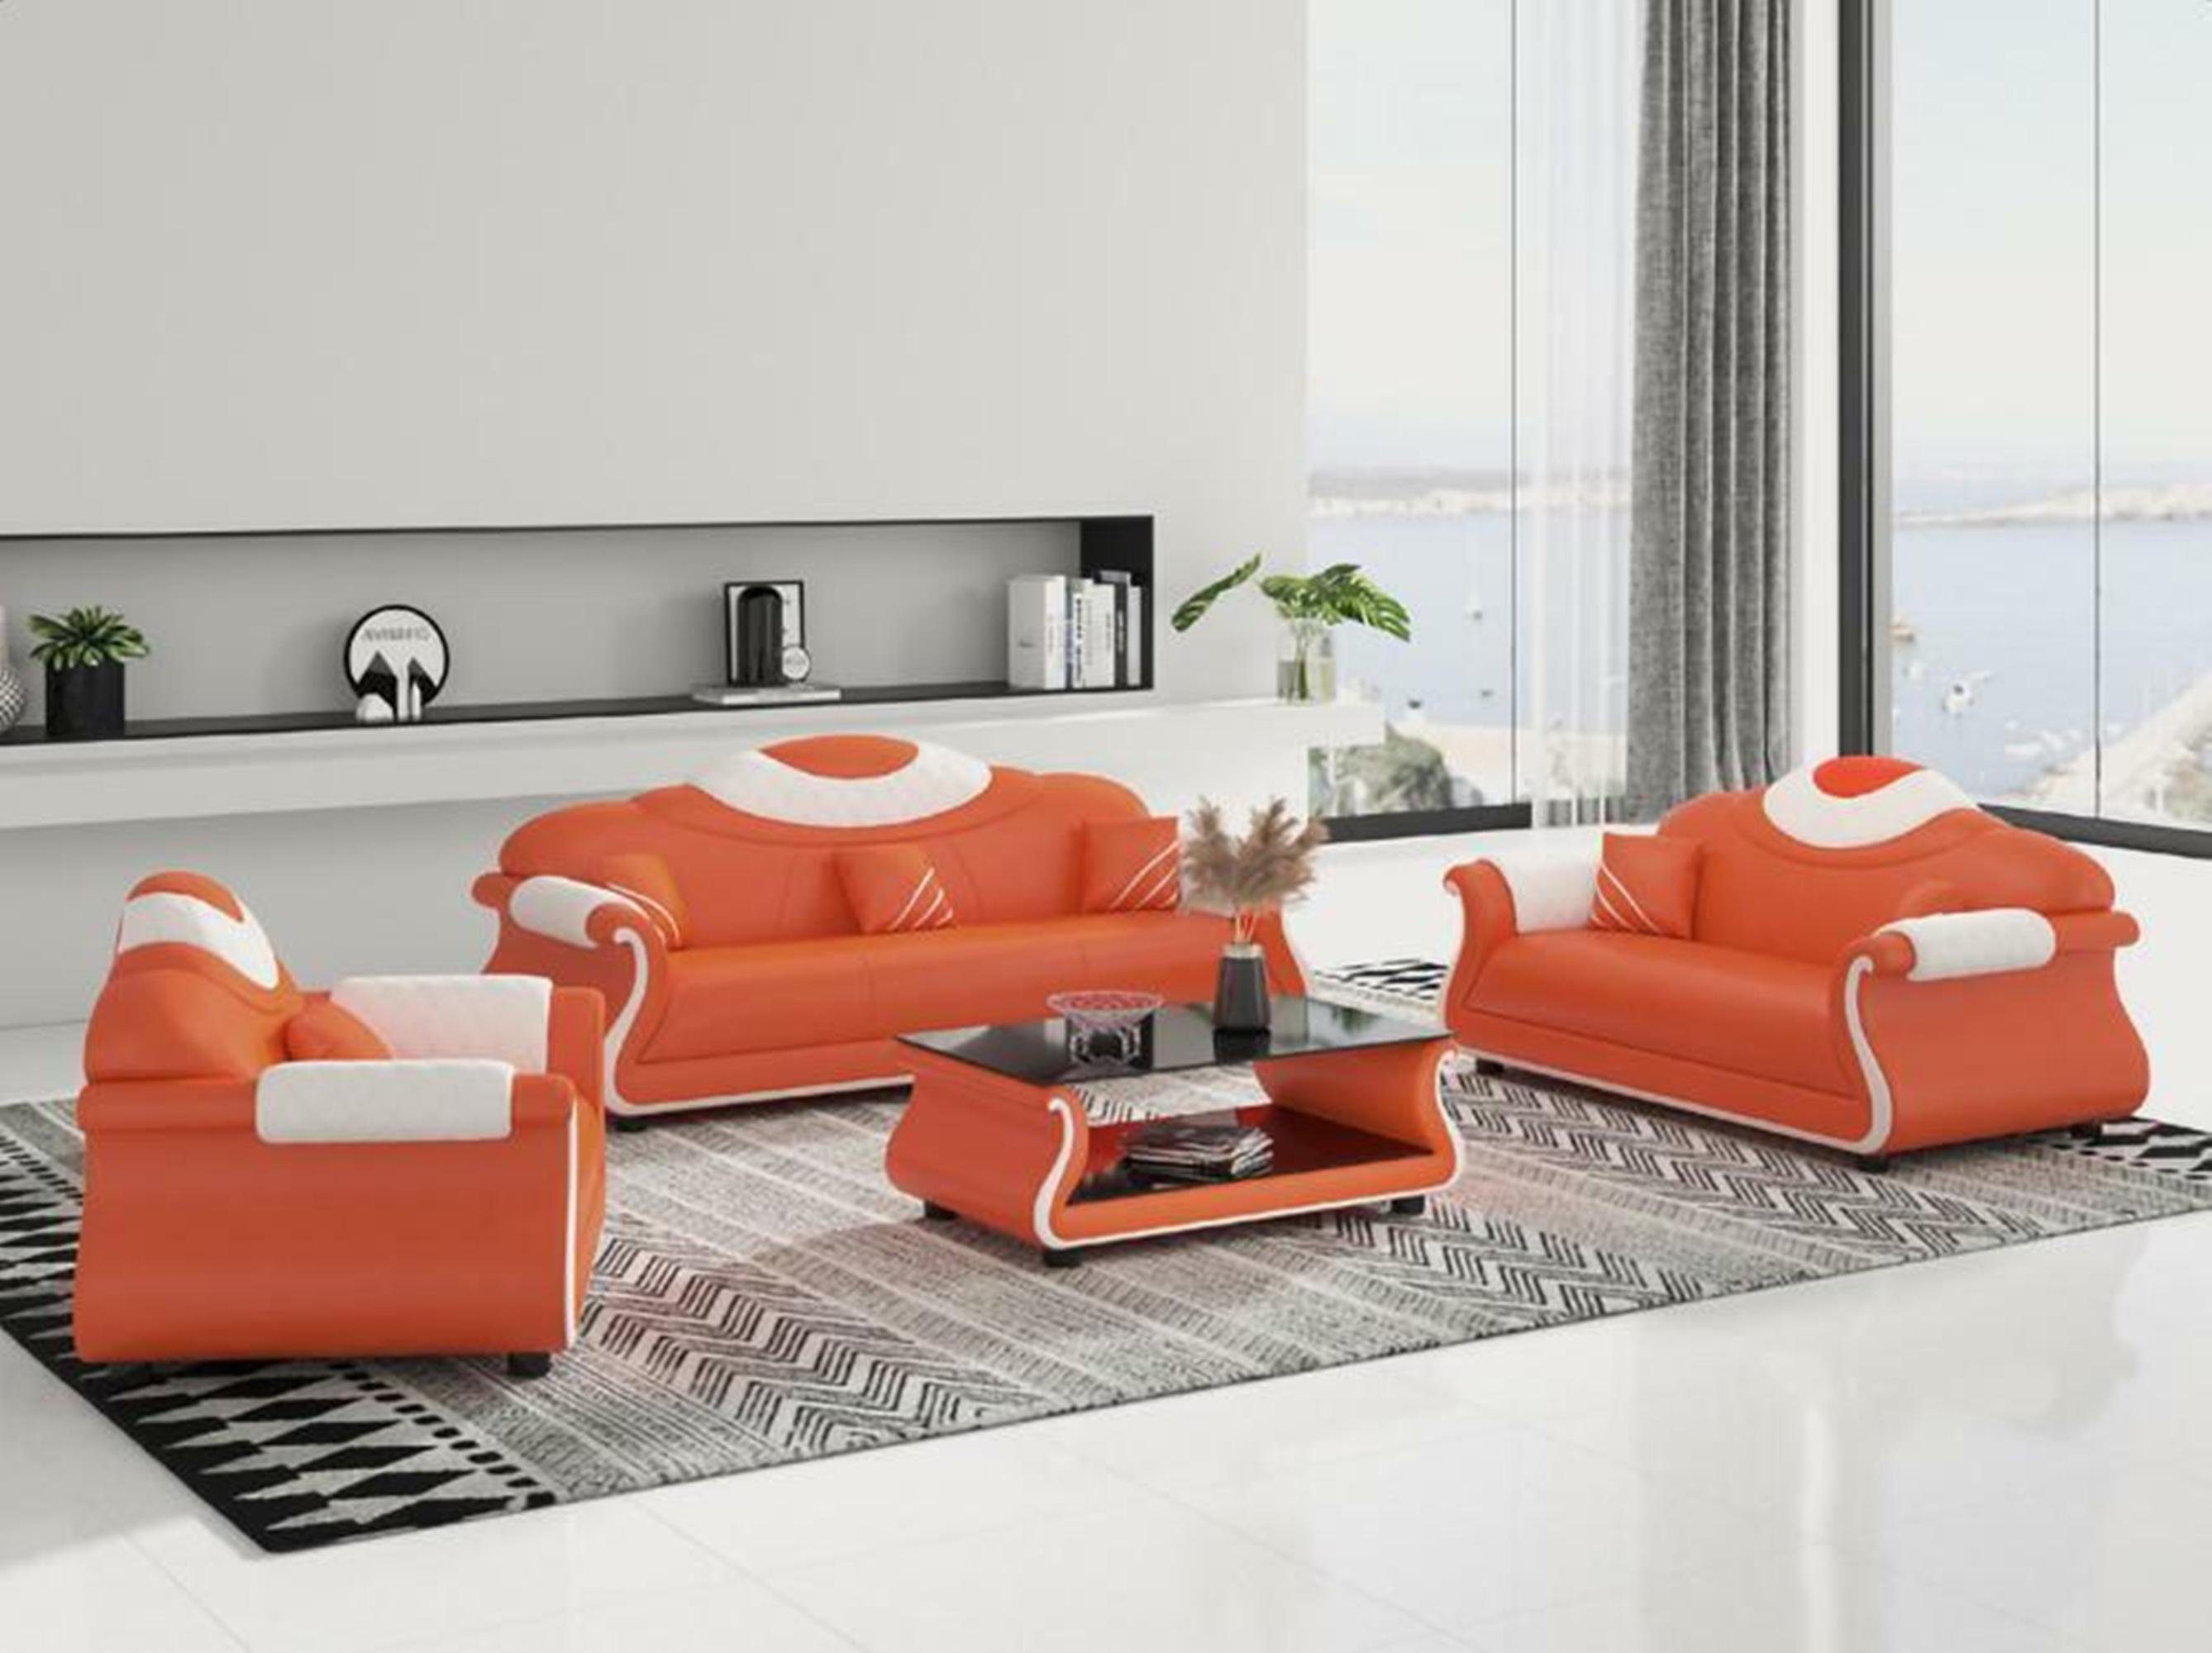 JVmoebel Wohnzimmer-Set Luxus Möbel Couch Sofa Polster 3+2+1 Sitzer + Couchtisch Holz neu Orange/Weiß | Wohnwände